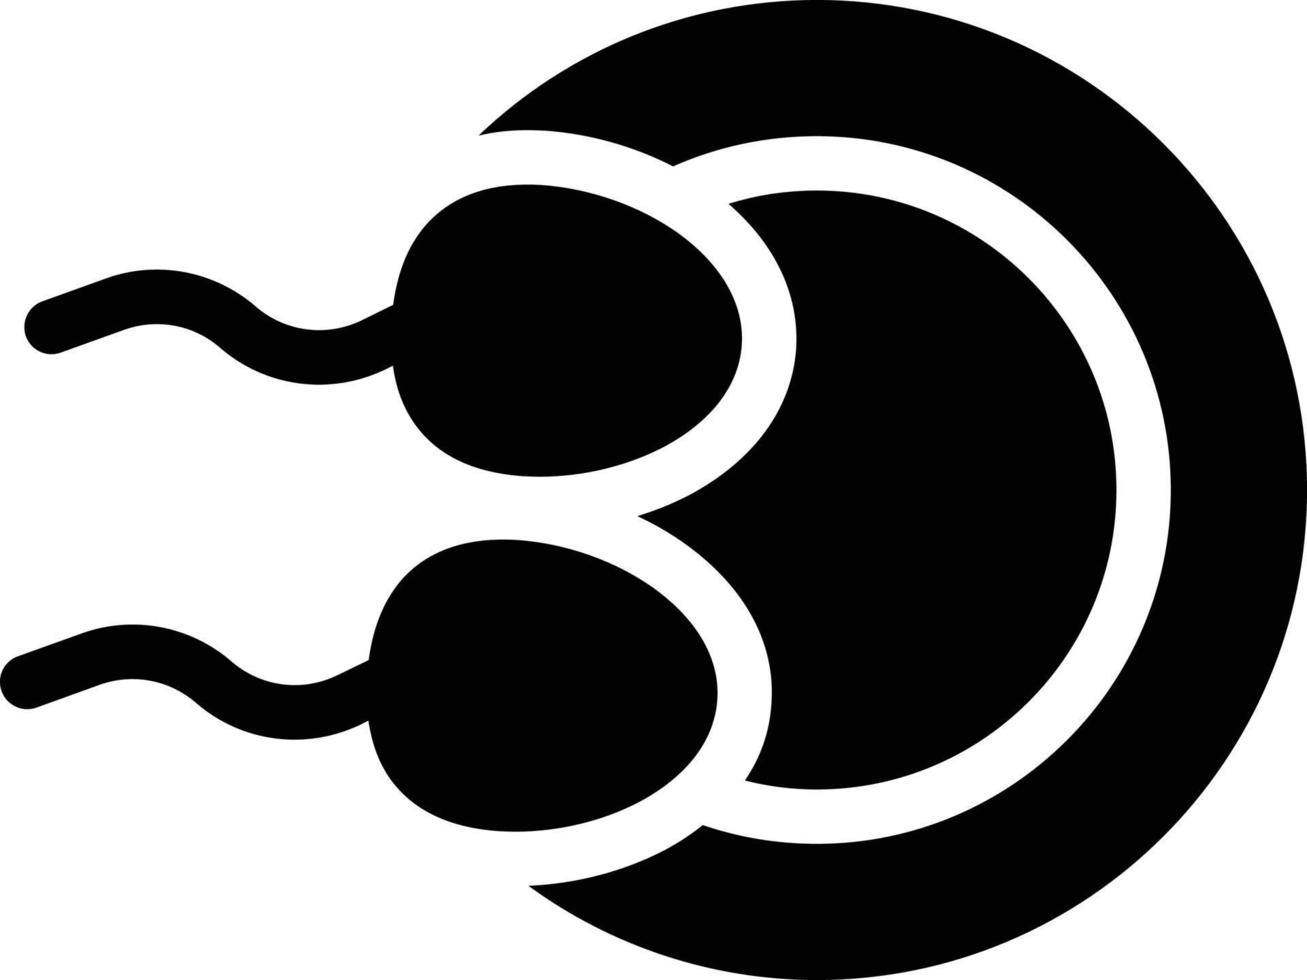 sperma vector illustratie op een background.premium kwaliteit symbolen.vector iconen voor concept en grafisch ontwerp.